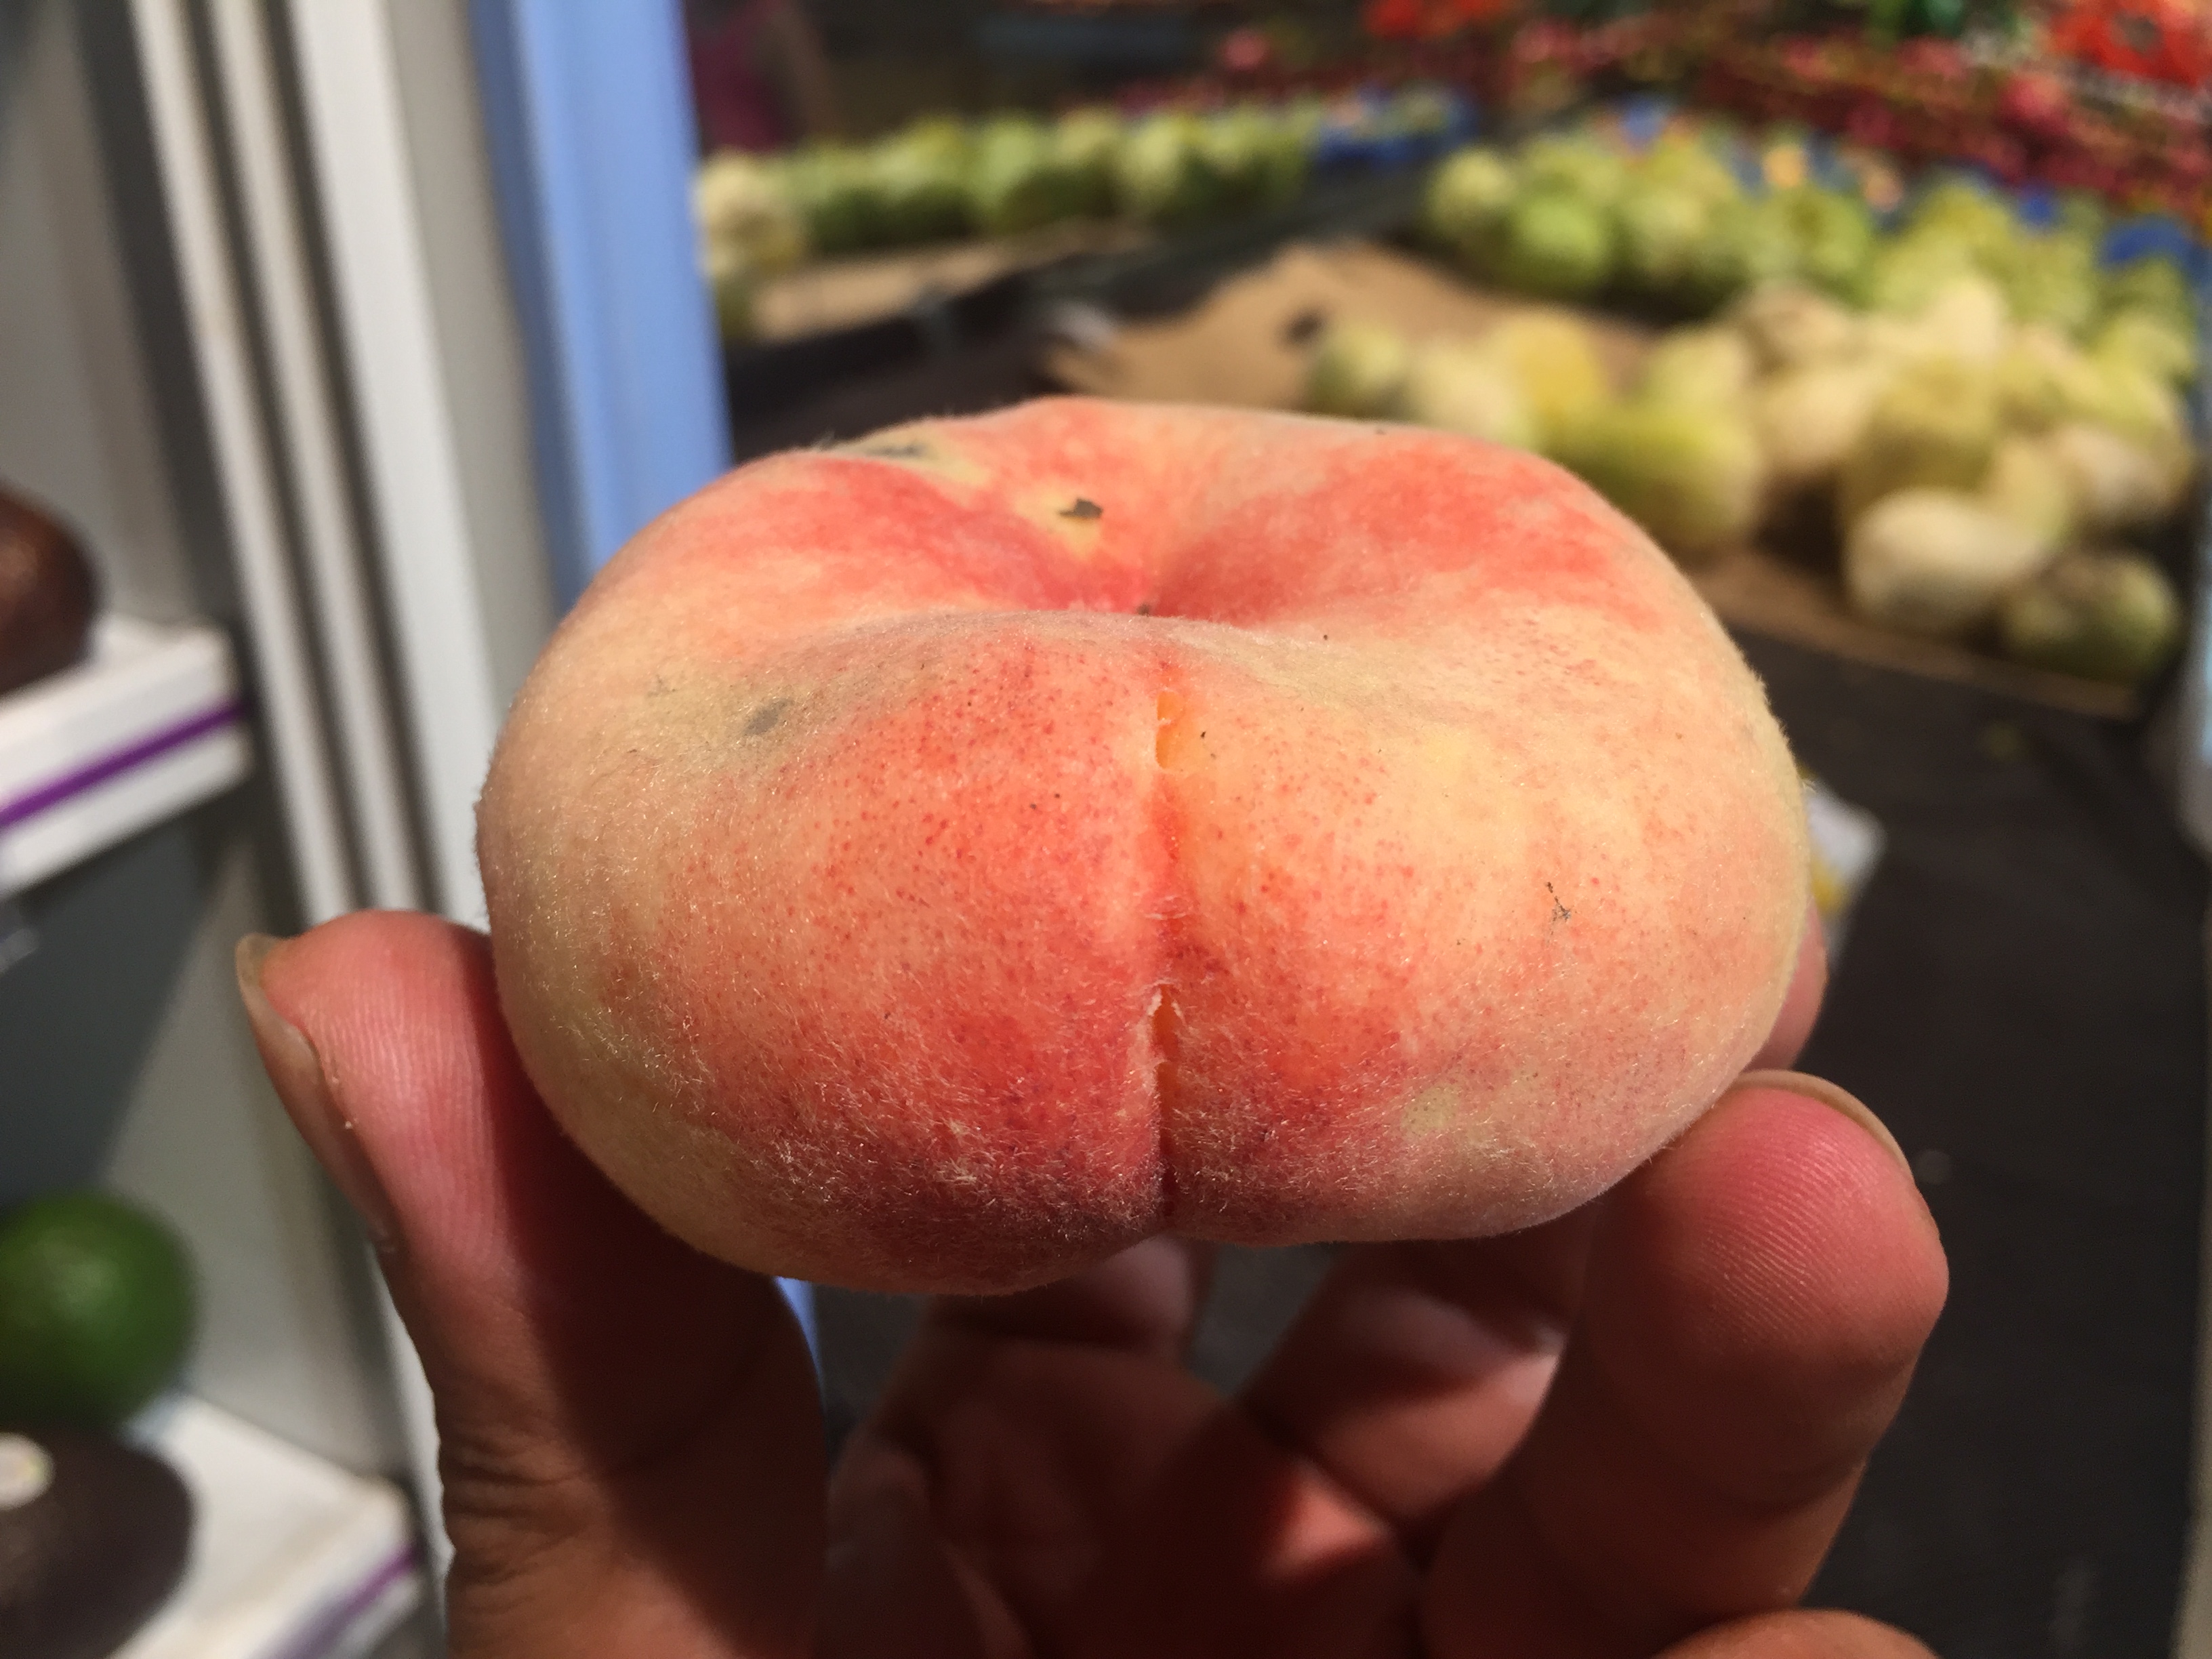 其实这种扁桃吃起来和一般的桃子味道也差不多